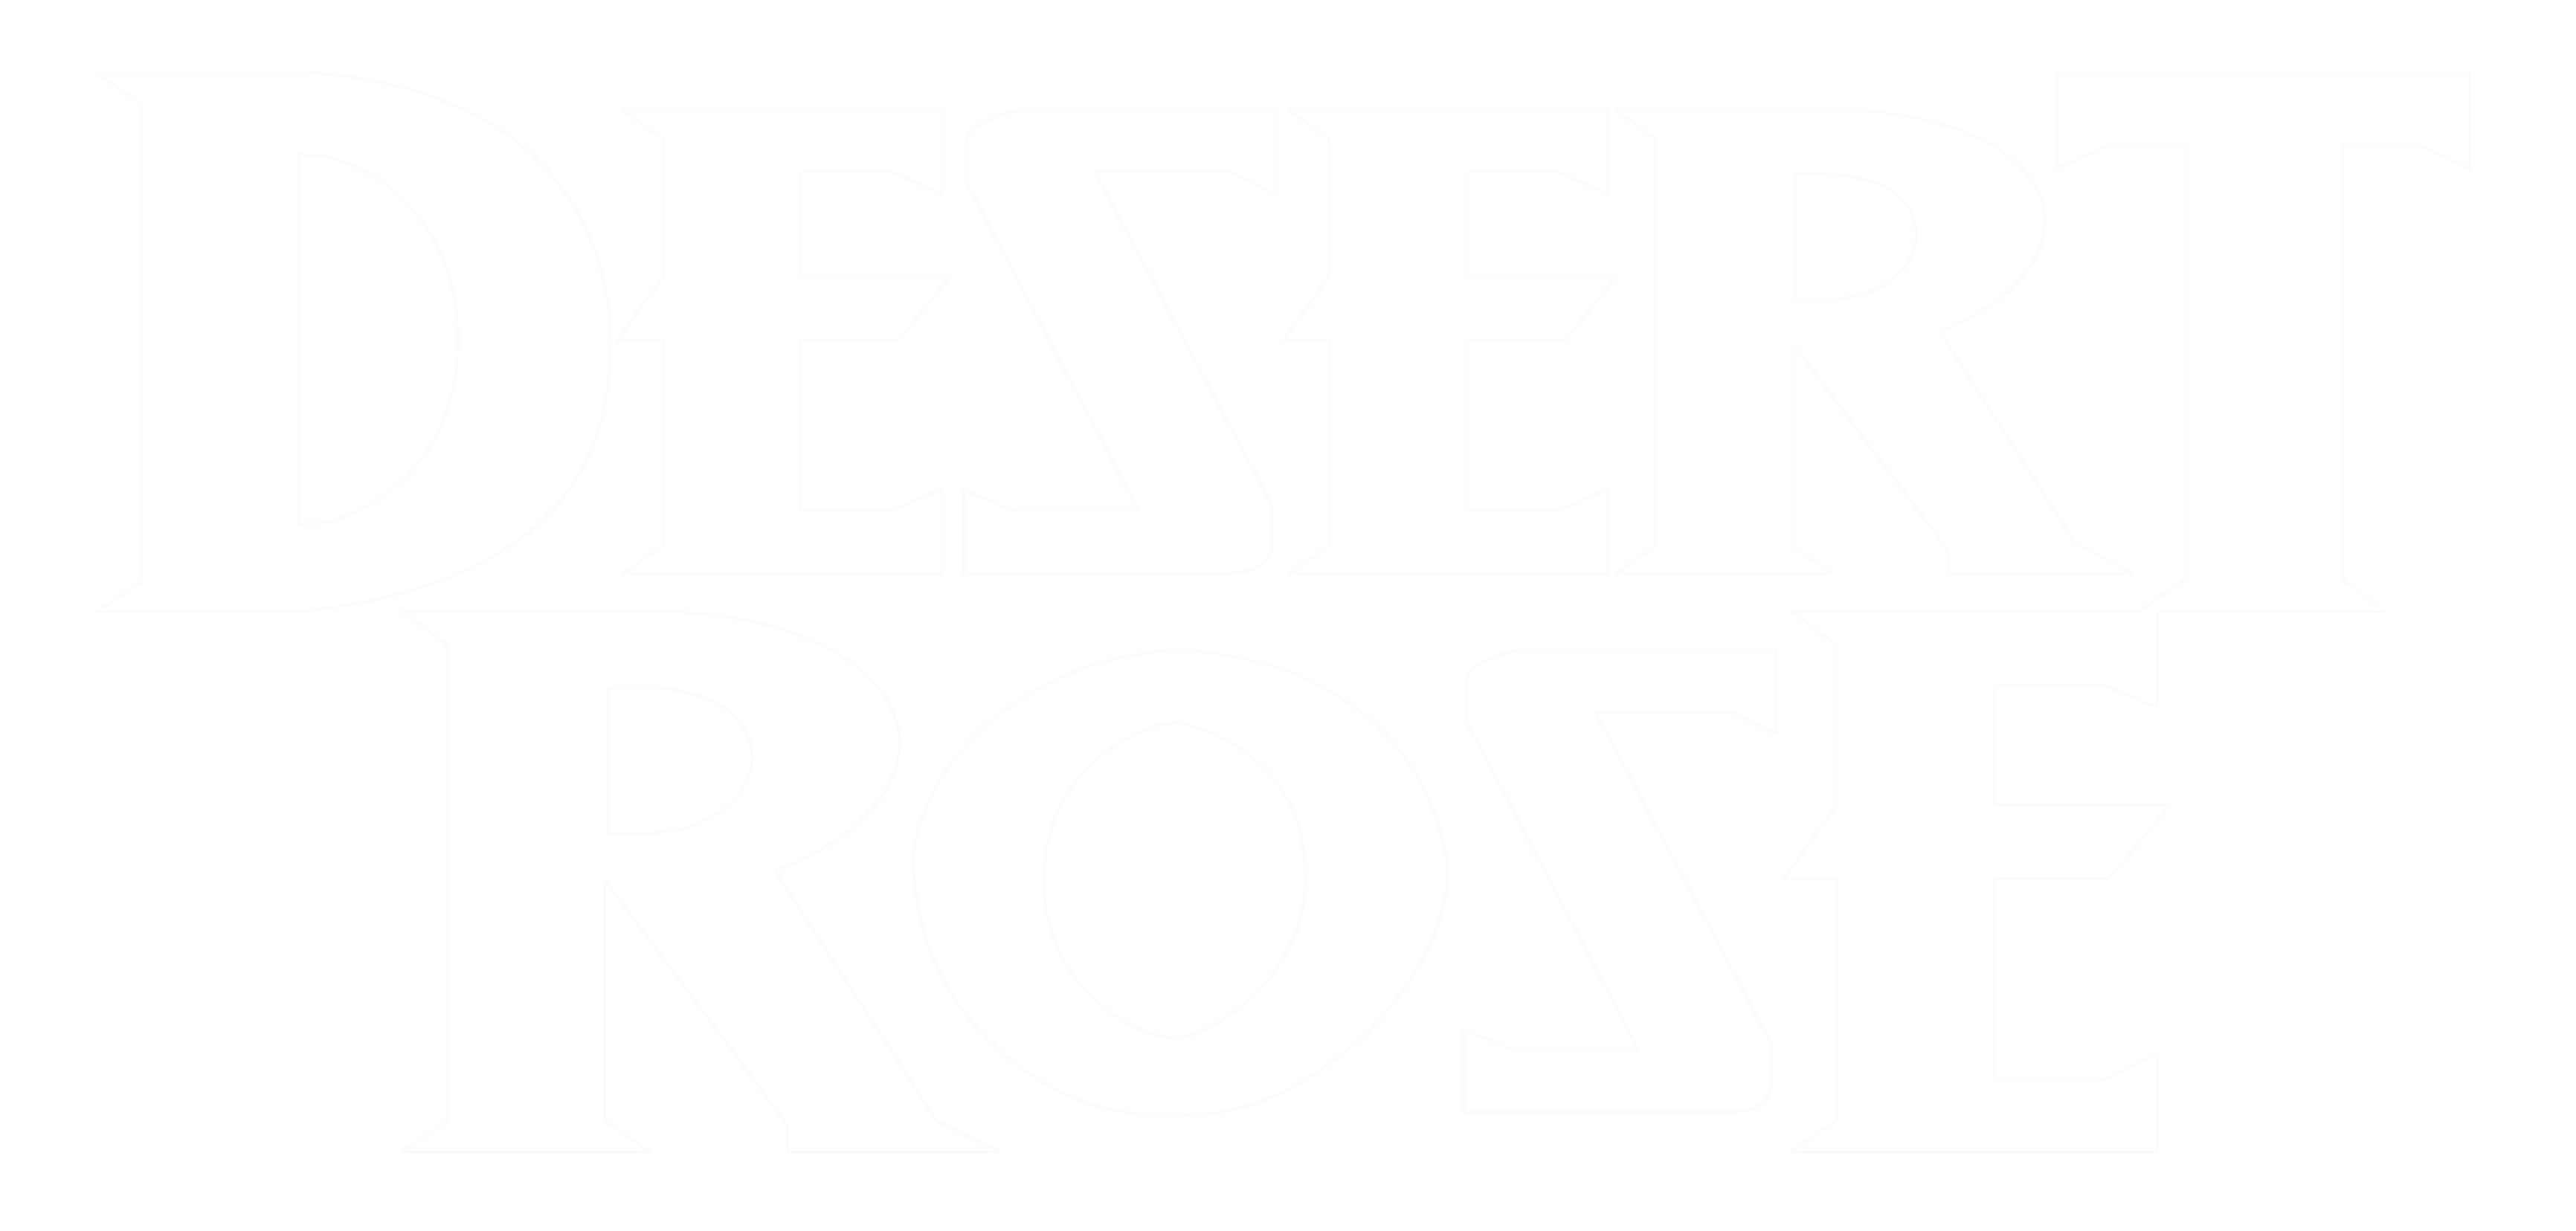 Desert Rose Logo